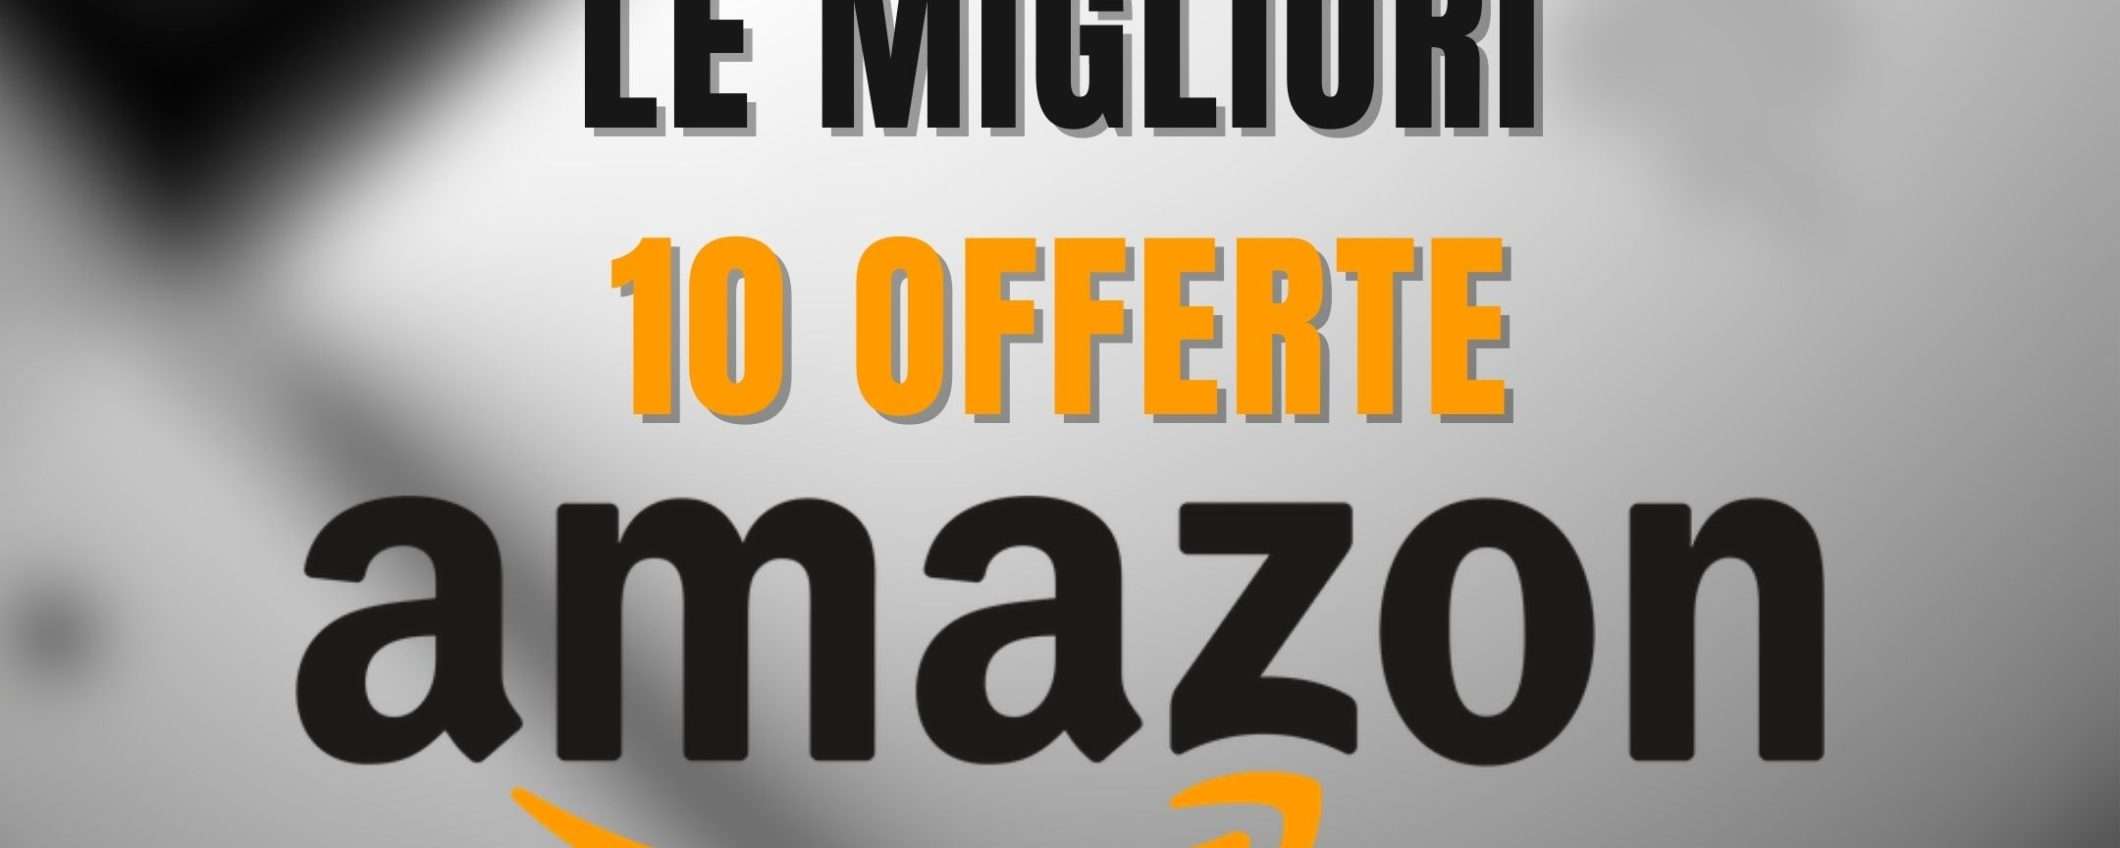 LE 10 MIGLIORI OFFERTE Amazon di oggi: fino al 77% di SCONTO!